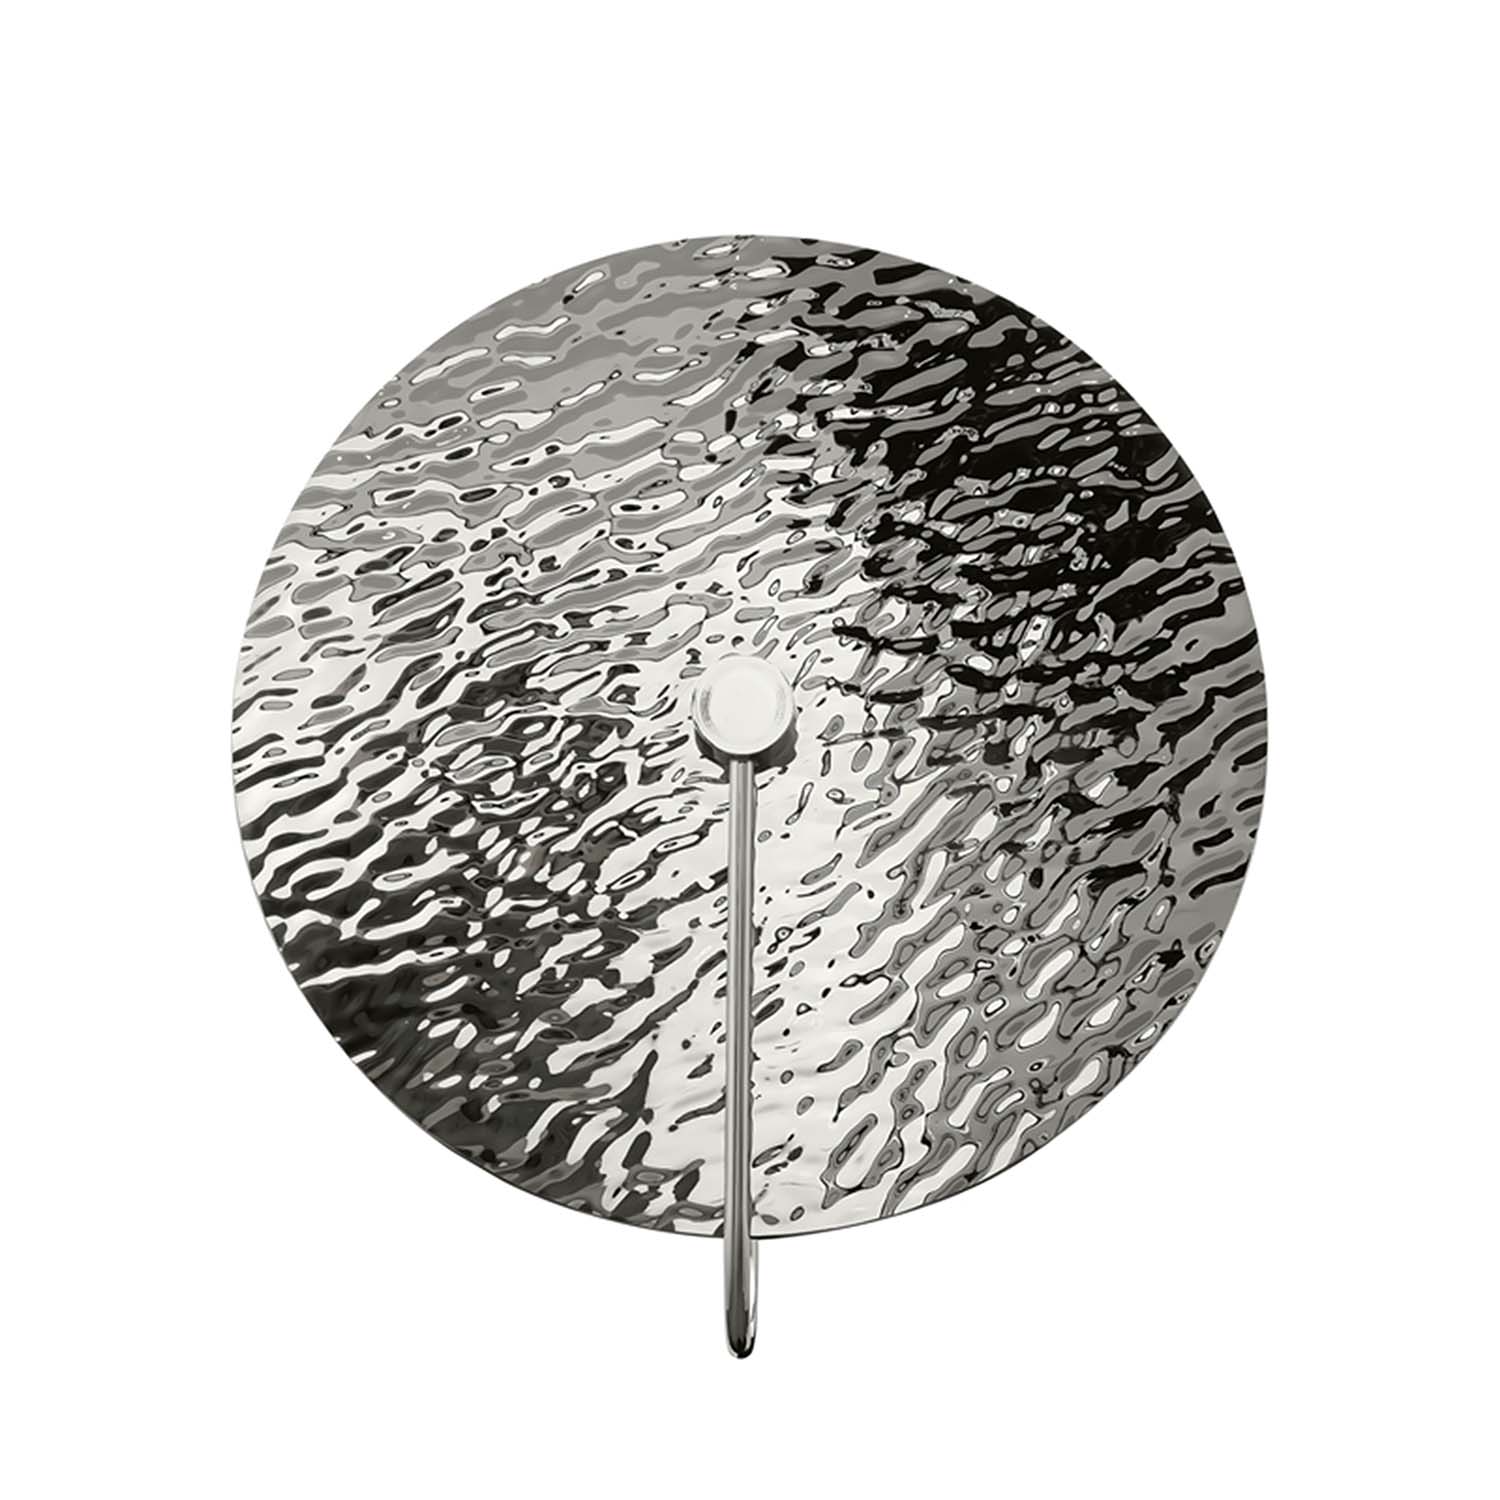 MARE - Applique murale circulaire en metal martelé doré ou acier